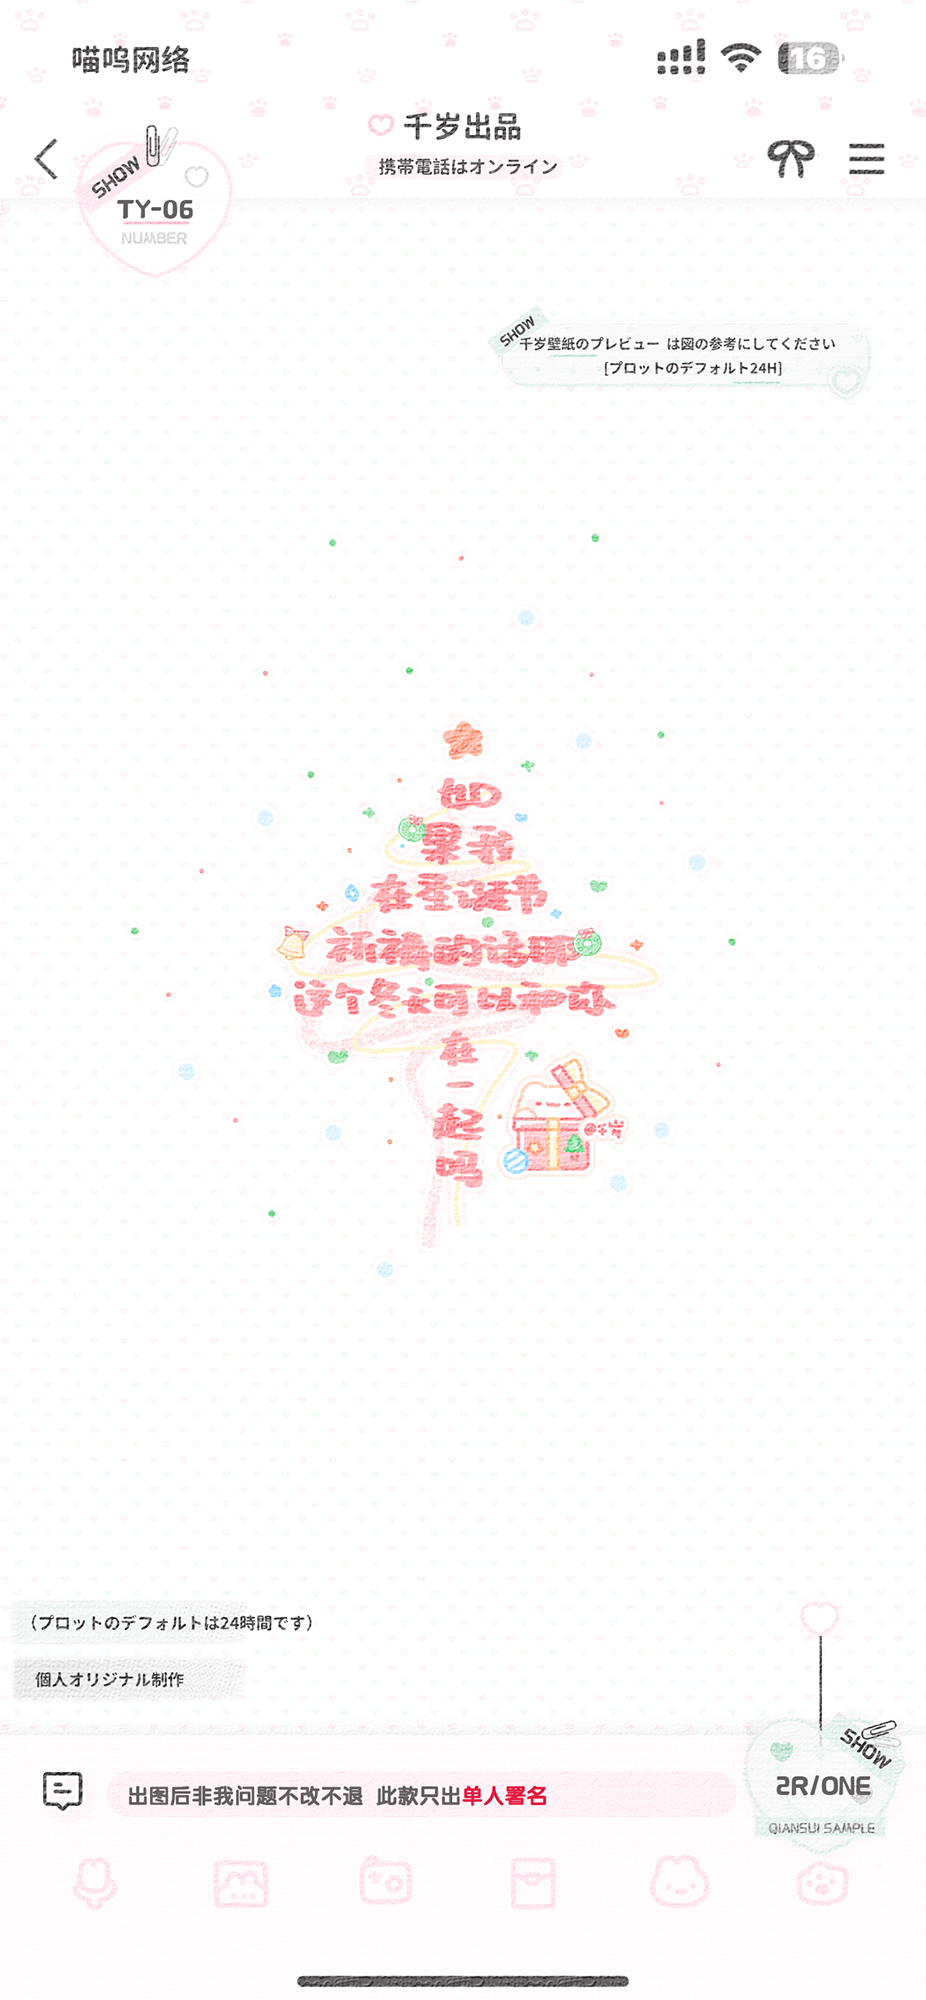 「可爱壁纸·圣诞款」美化圈署名背景 圣诞节祈祷冬天和你在一起